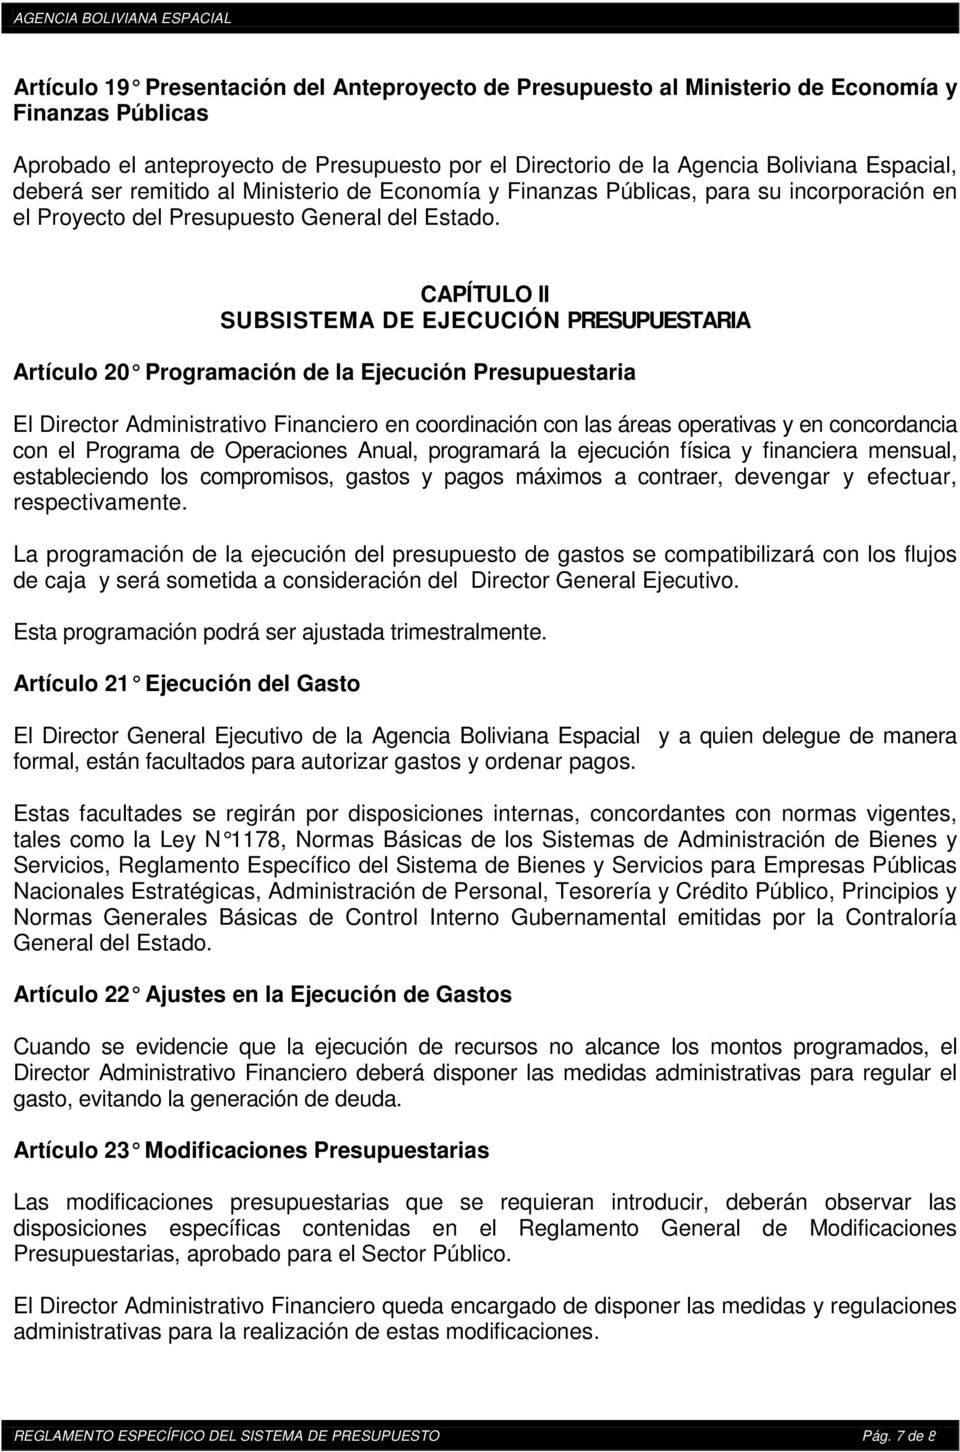 CAPÍTULO II SUBSISTEMA DE EJECUCIÓN PRESUPUESTARIA Artículo 20 Programación de la Ejecución Presupuestaria El Director Administrativo Financiero en coordinación con las áreas operativas y en